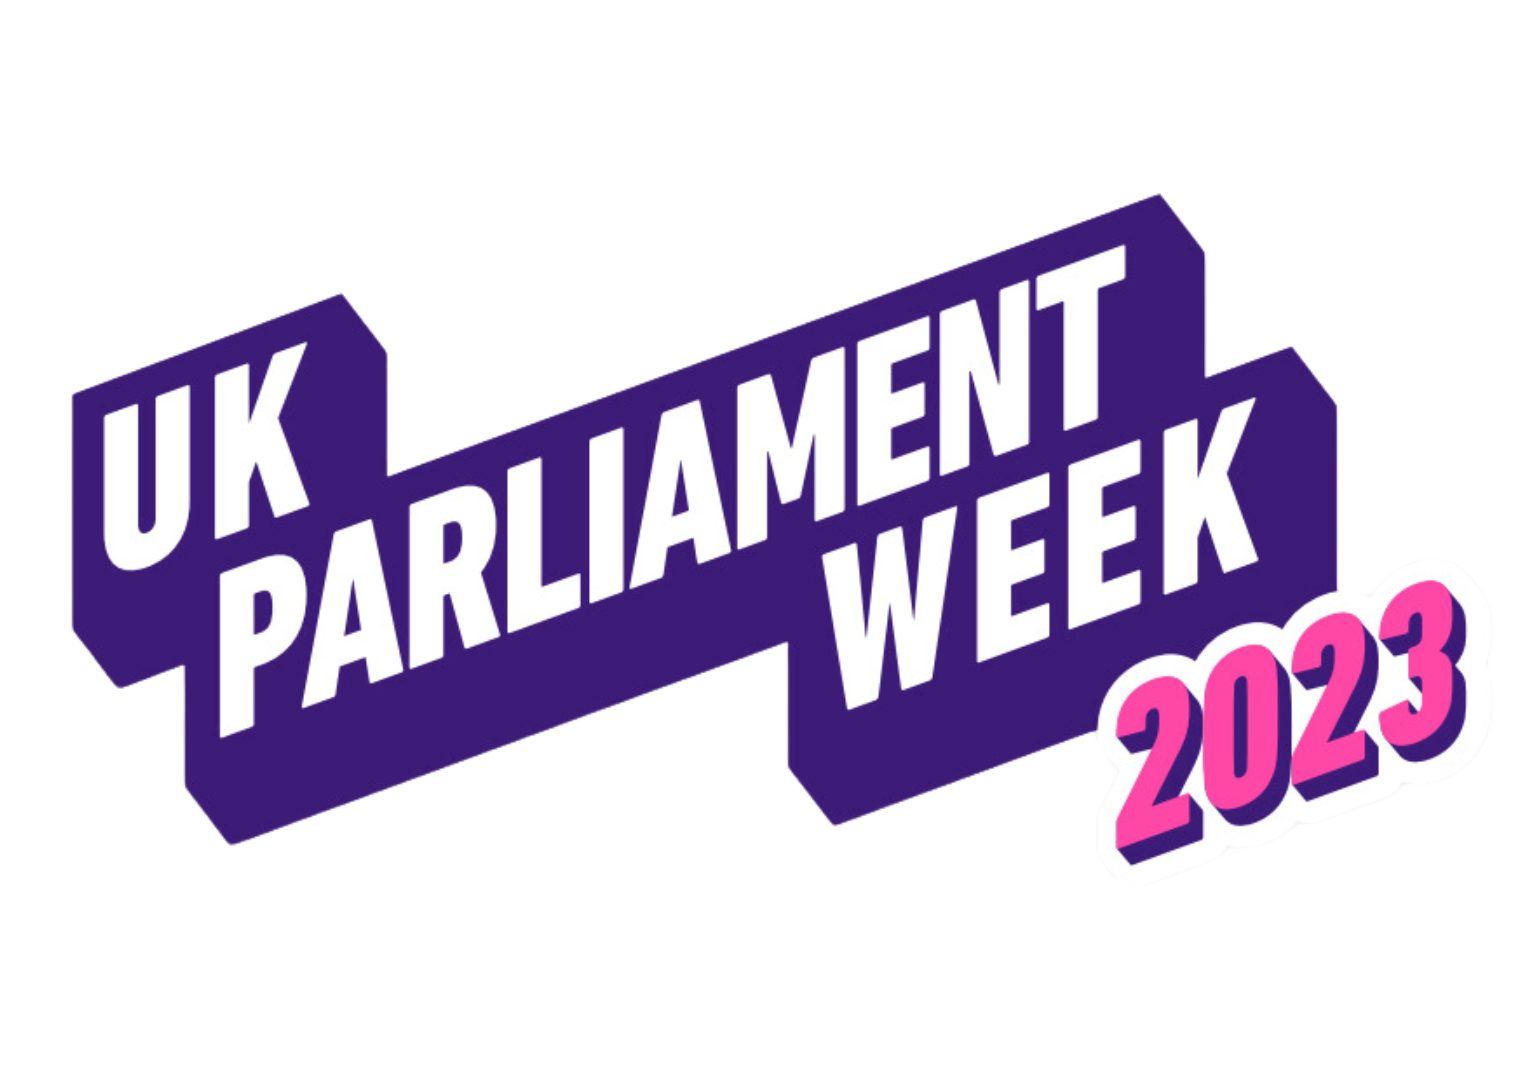 image relating to UK Parliament Week